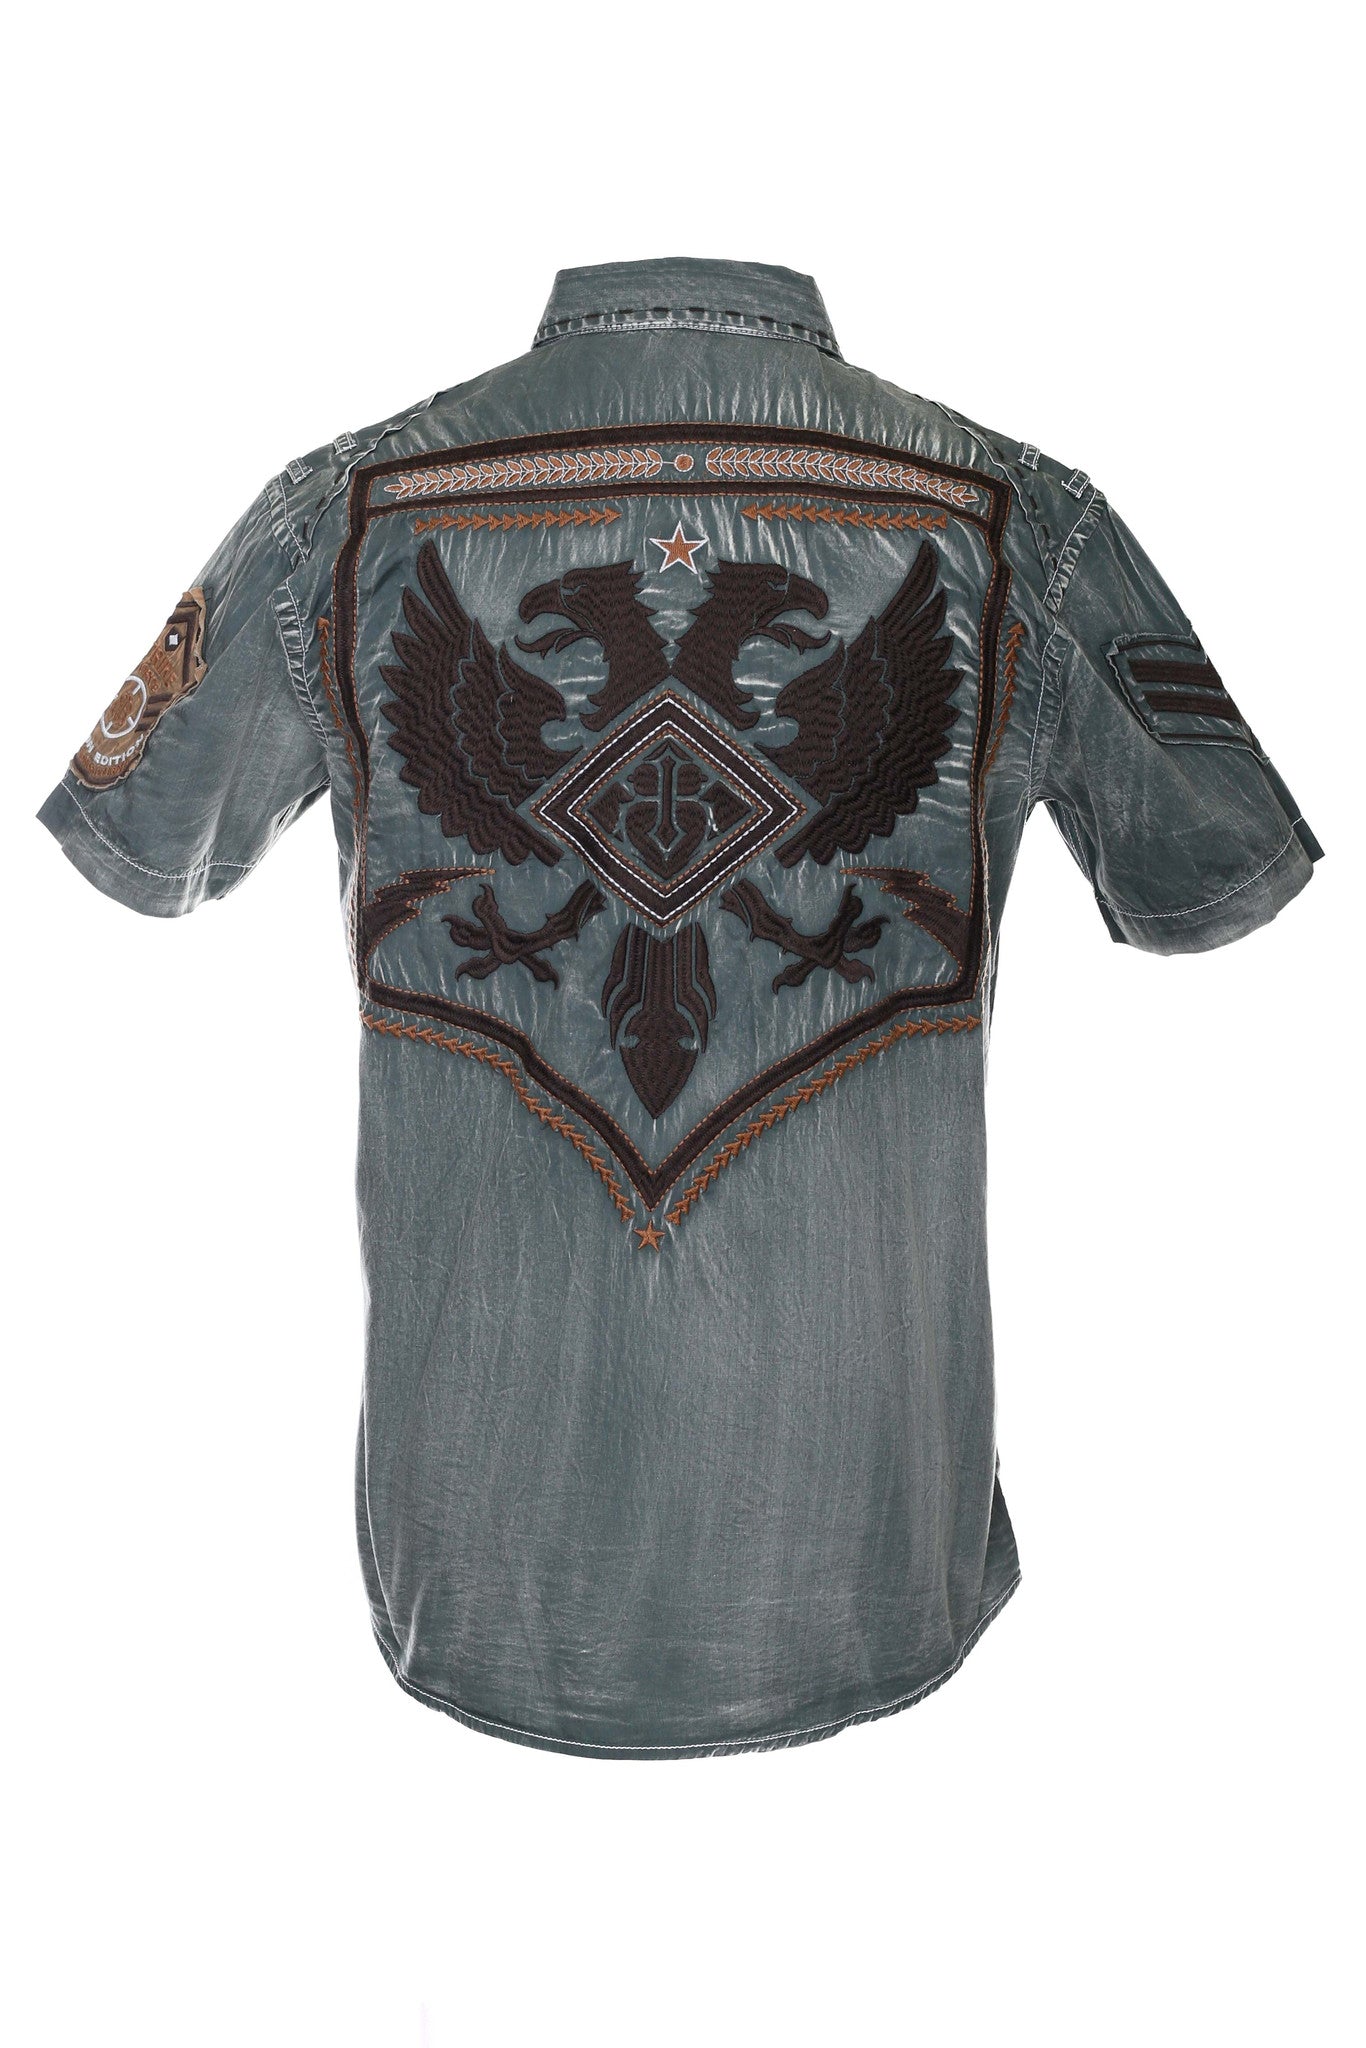 Roar Men's Strike Force Jr Olive Short Sleeve Shirt - Longhorn Western Wear